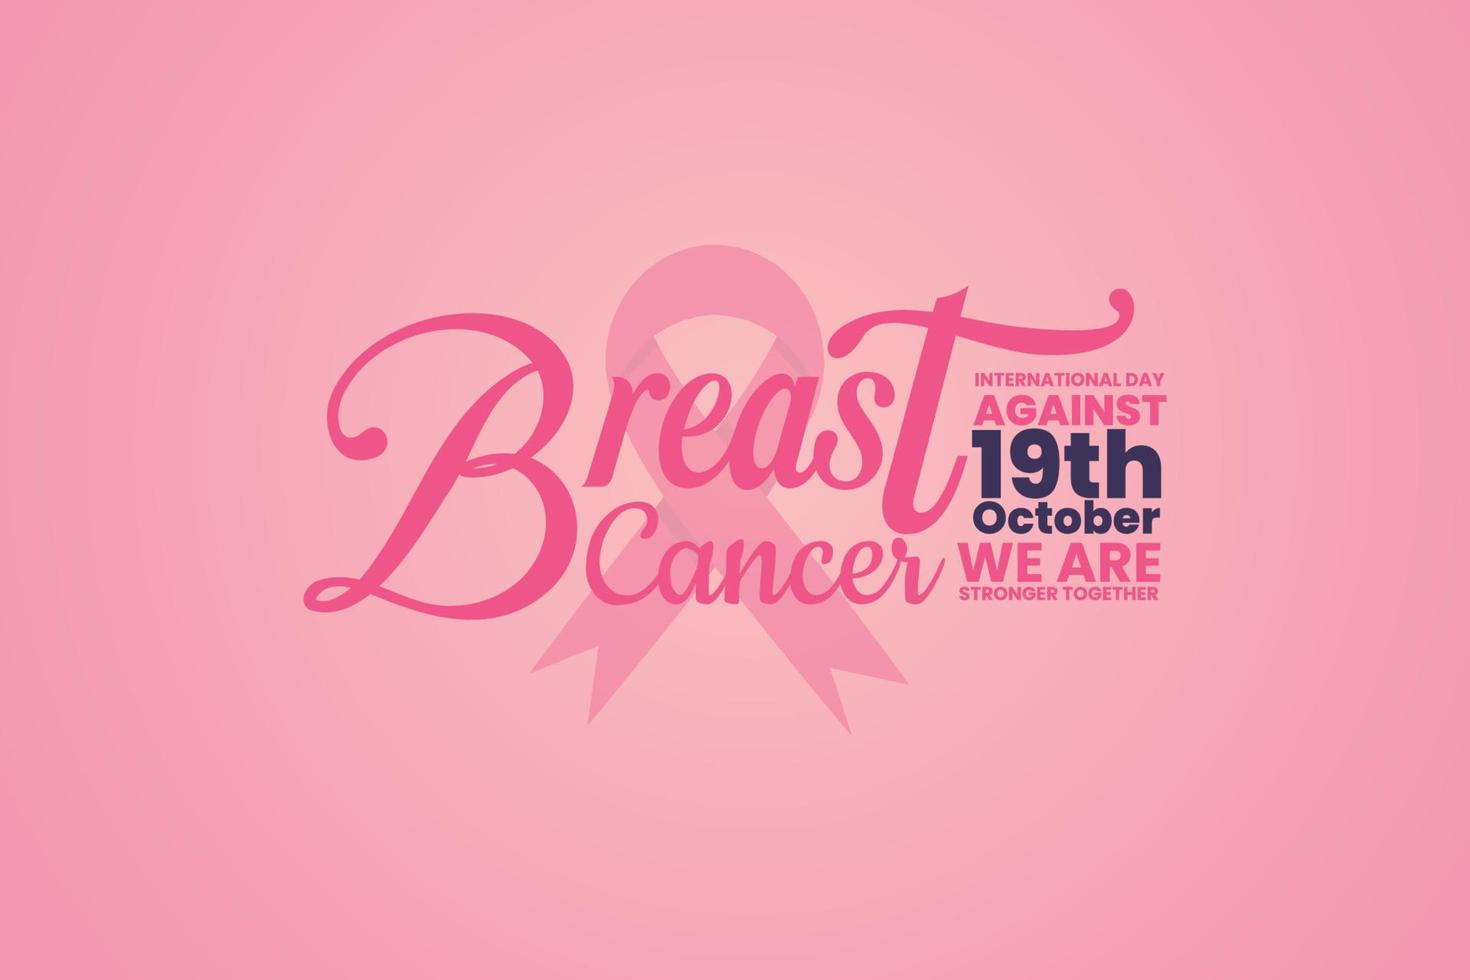 journée internationale contre le mois de sensibilisation au cancer du sein vecteur